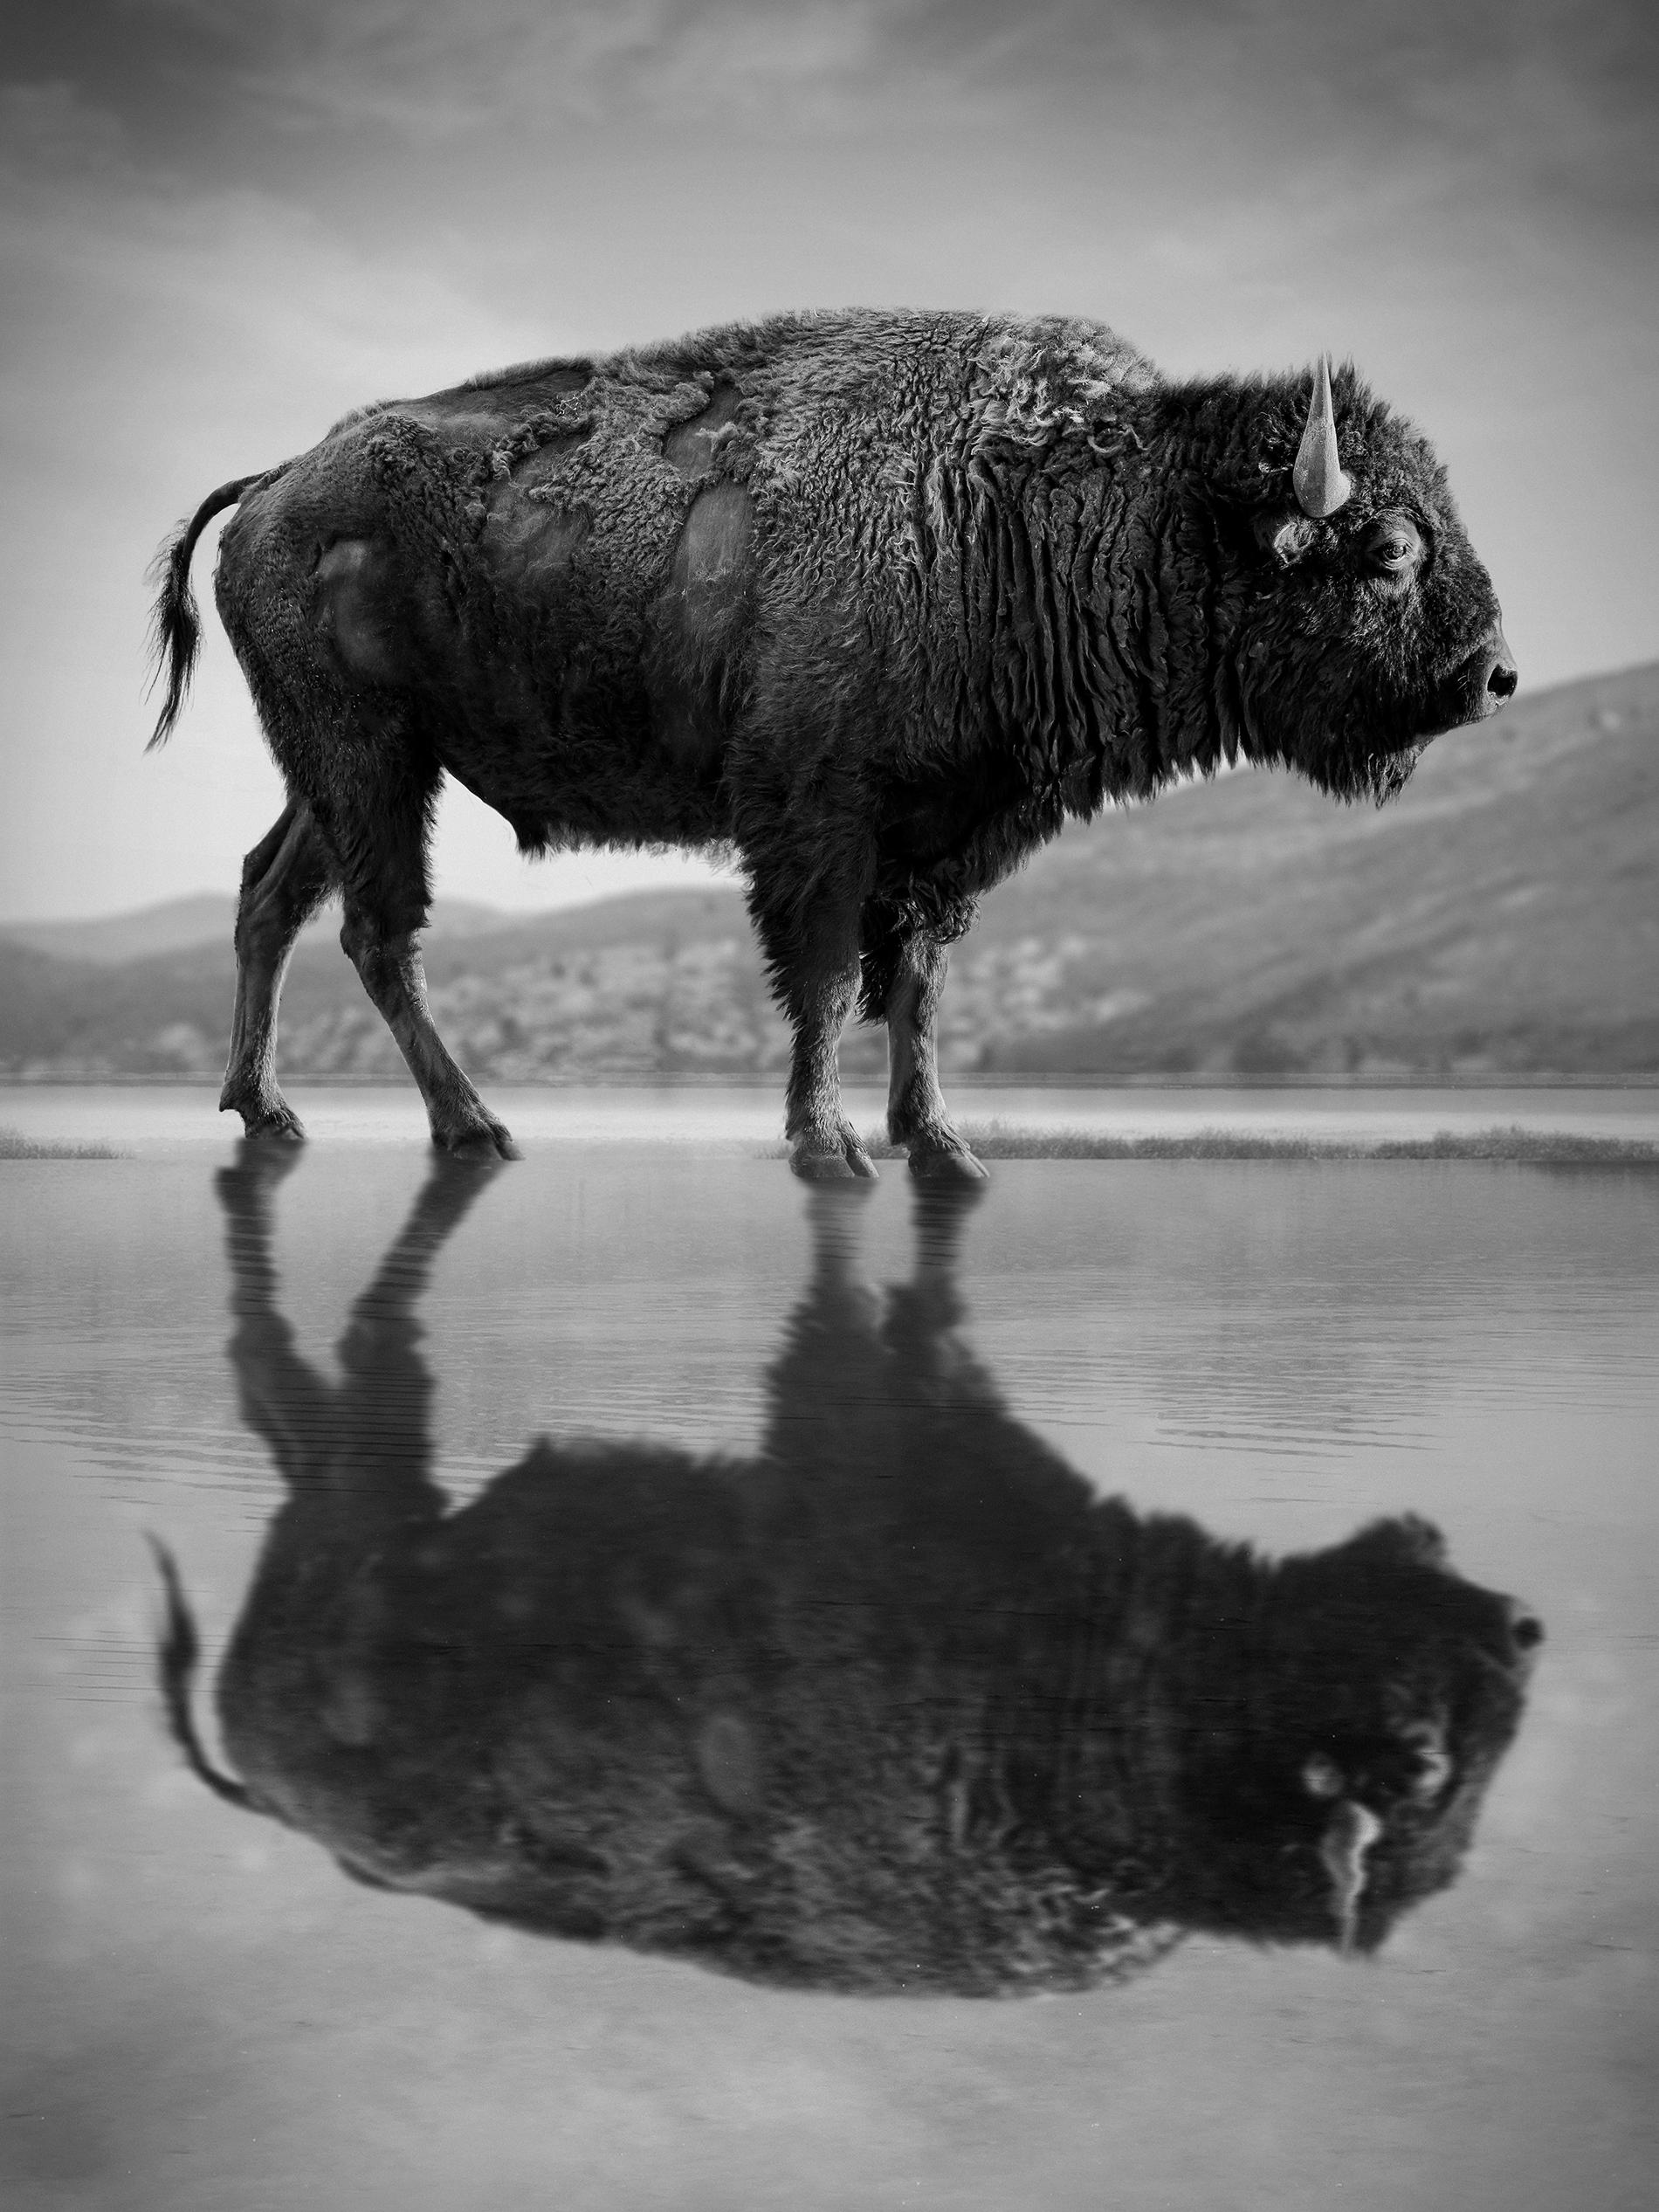 Black and White Photograph Shane Russeck - "Old World" 75x50 Photographie en noir et blanc Bison Buffalo Photographie signée